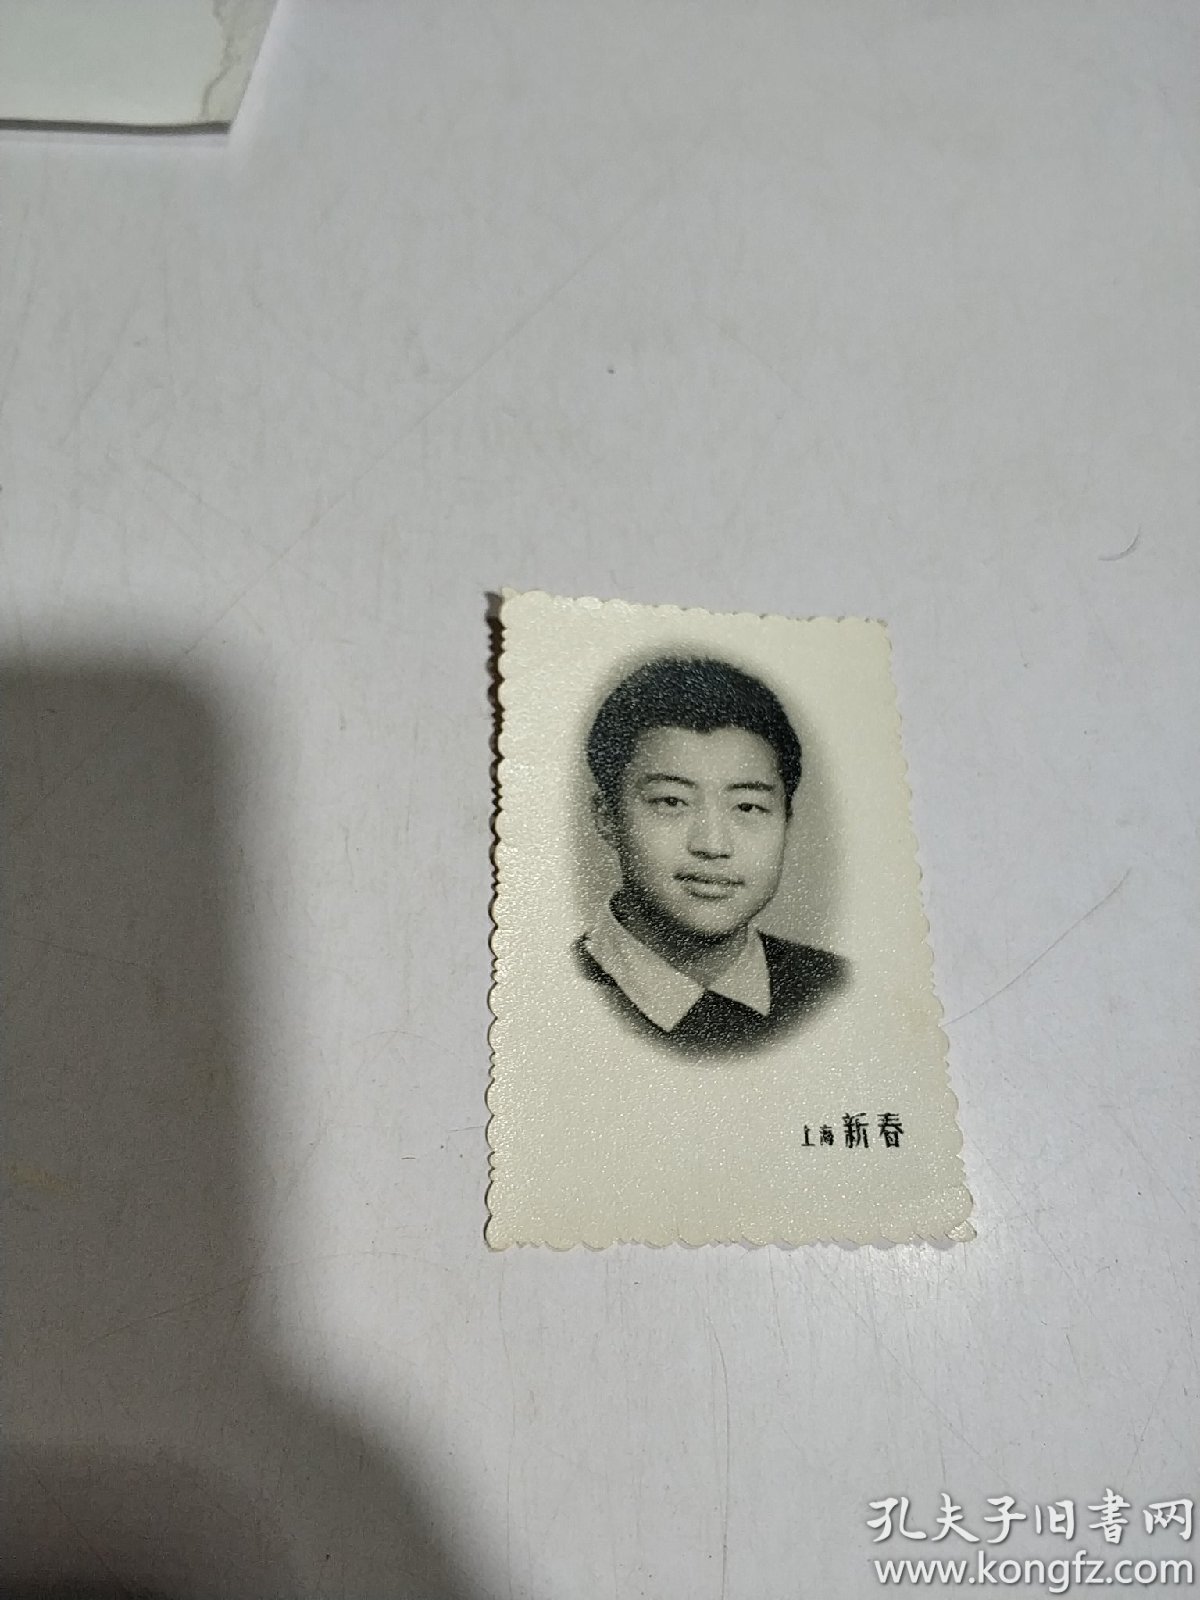 黑白老照片:2寸男孩头像照片(上海新春)